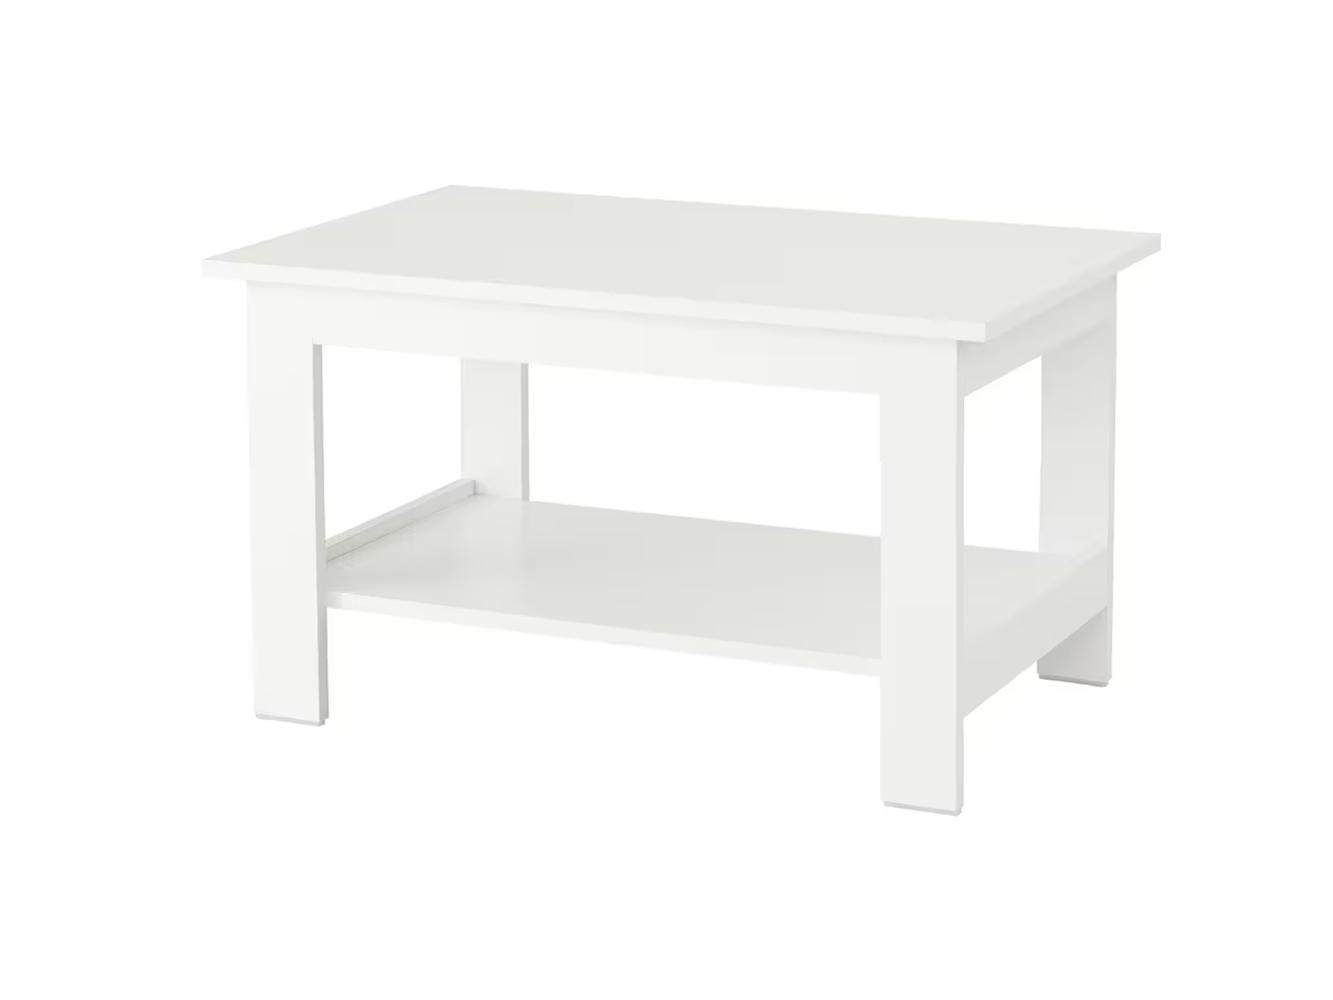 Журнальный столик Ноделанд 13 white ИКЕА (IKEA) изображение товара